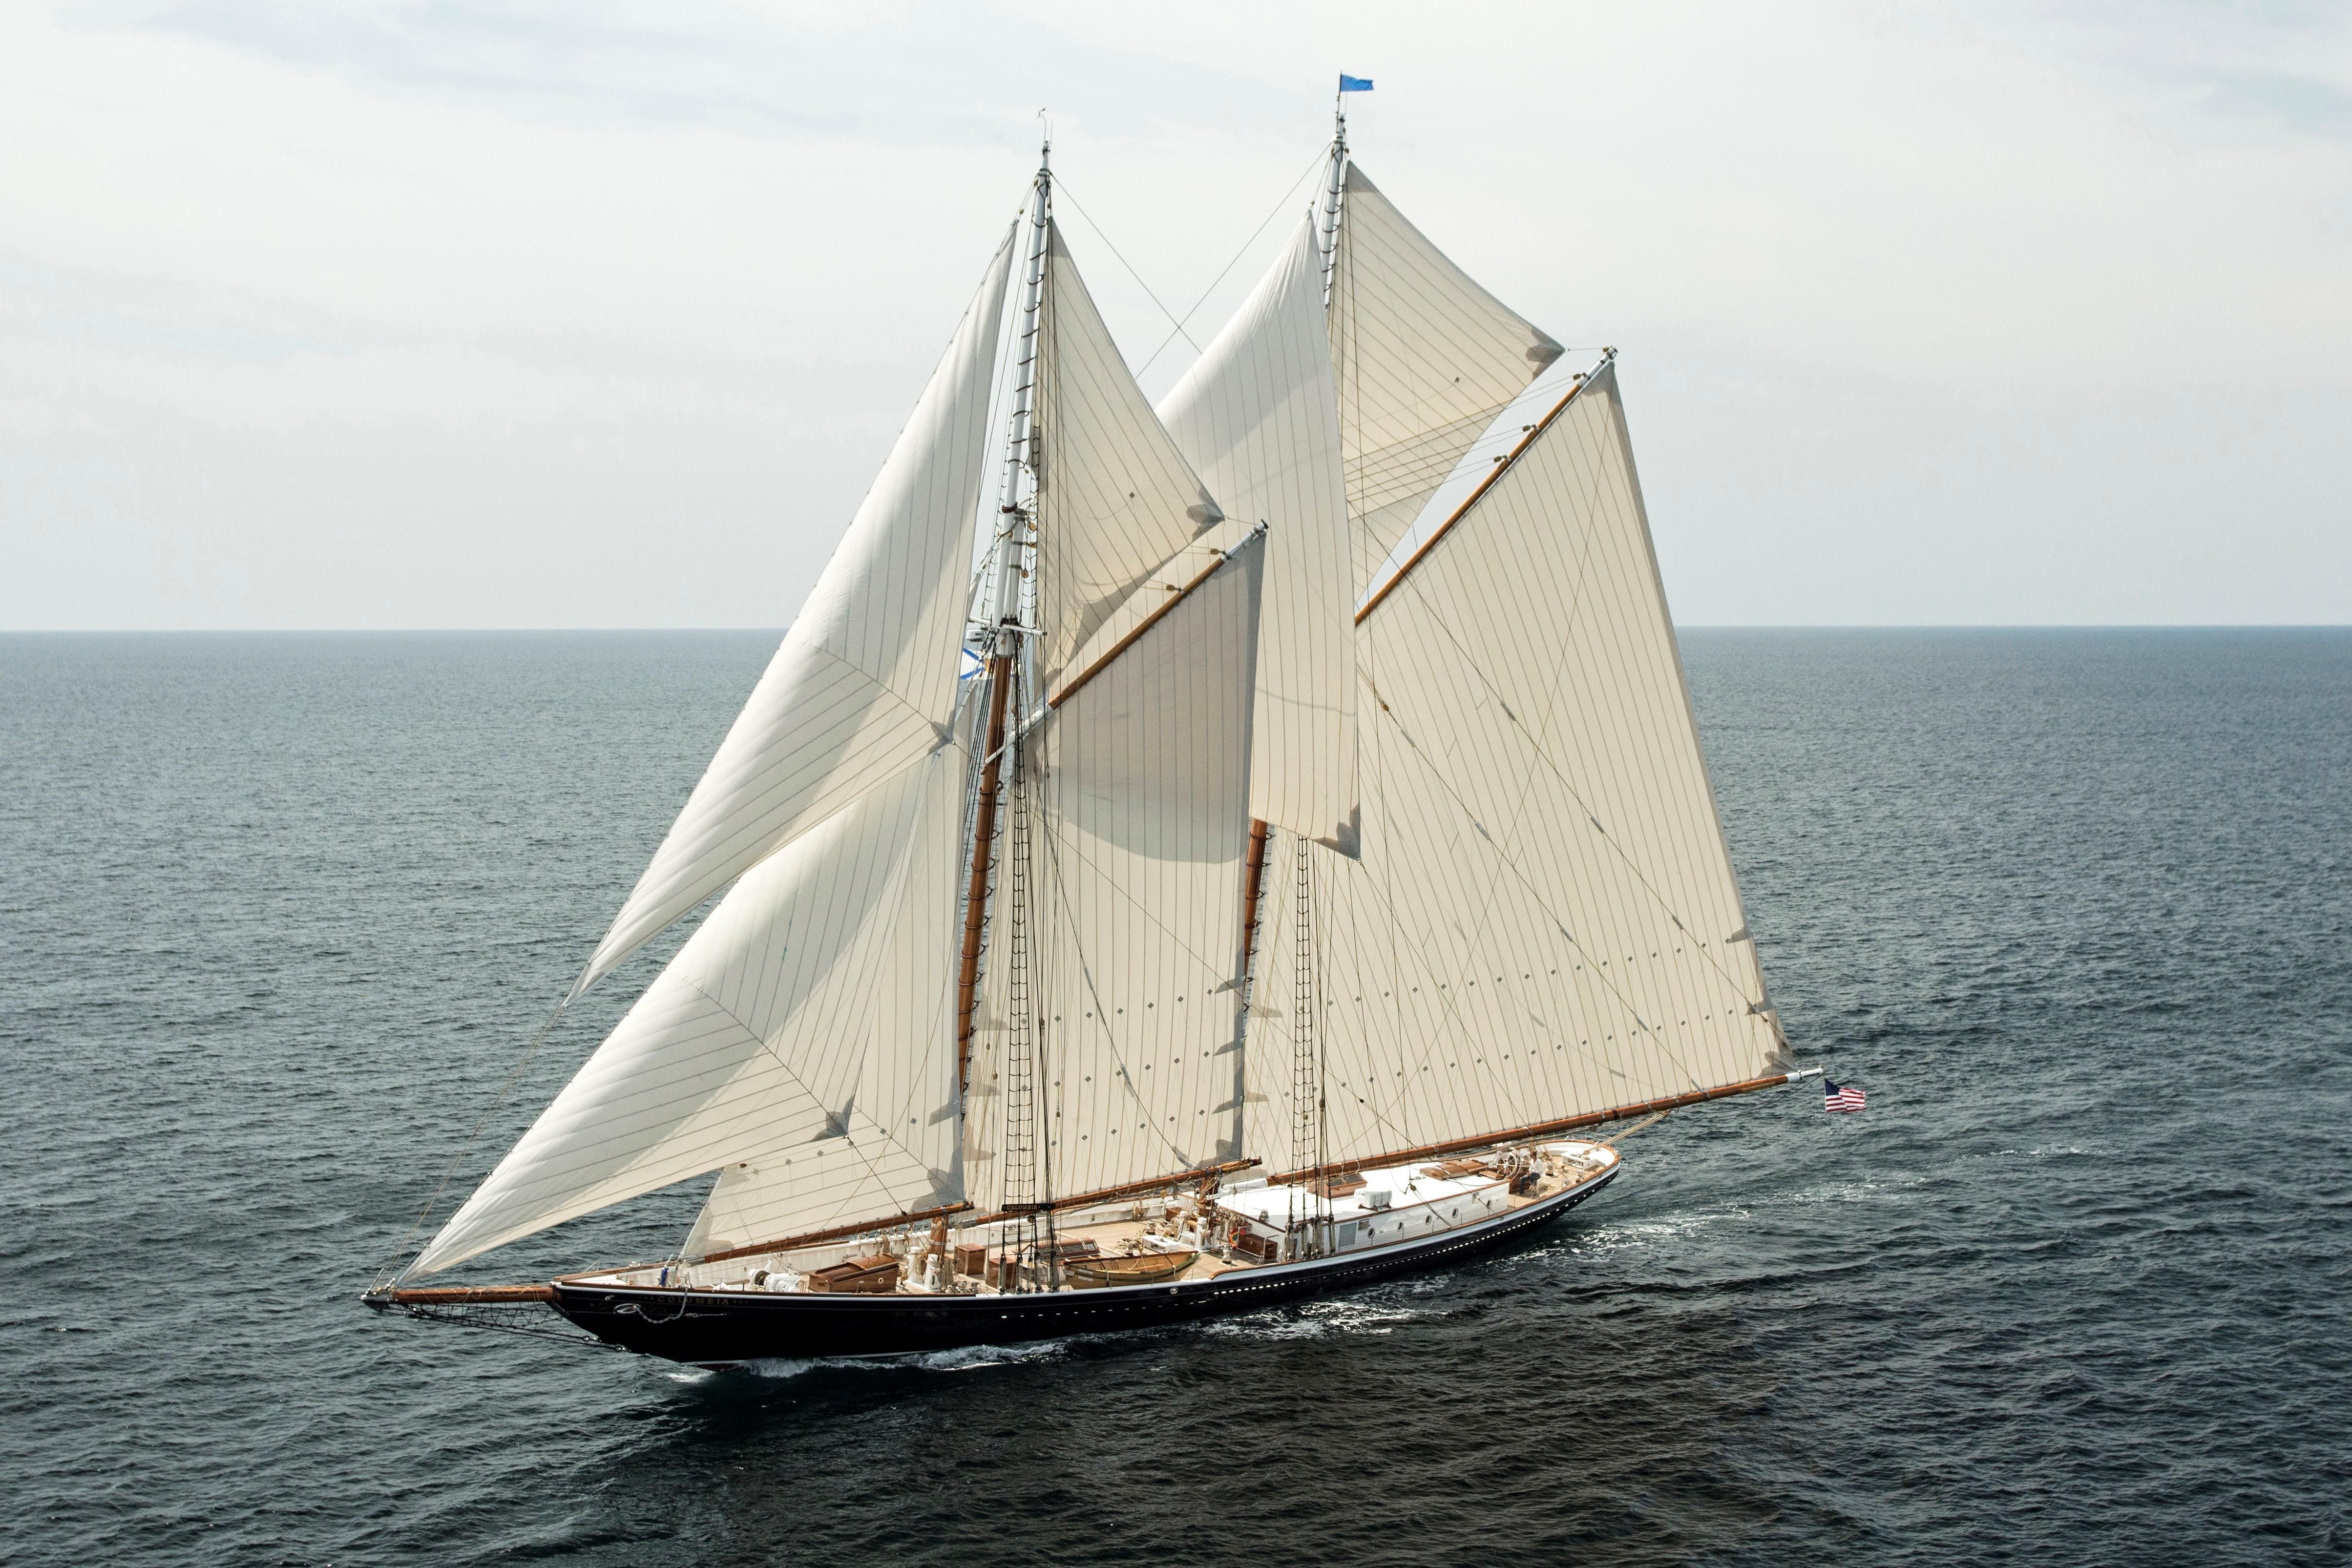 schooner or sailboat